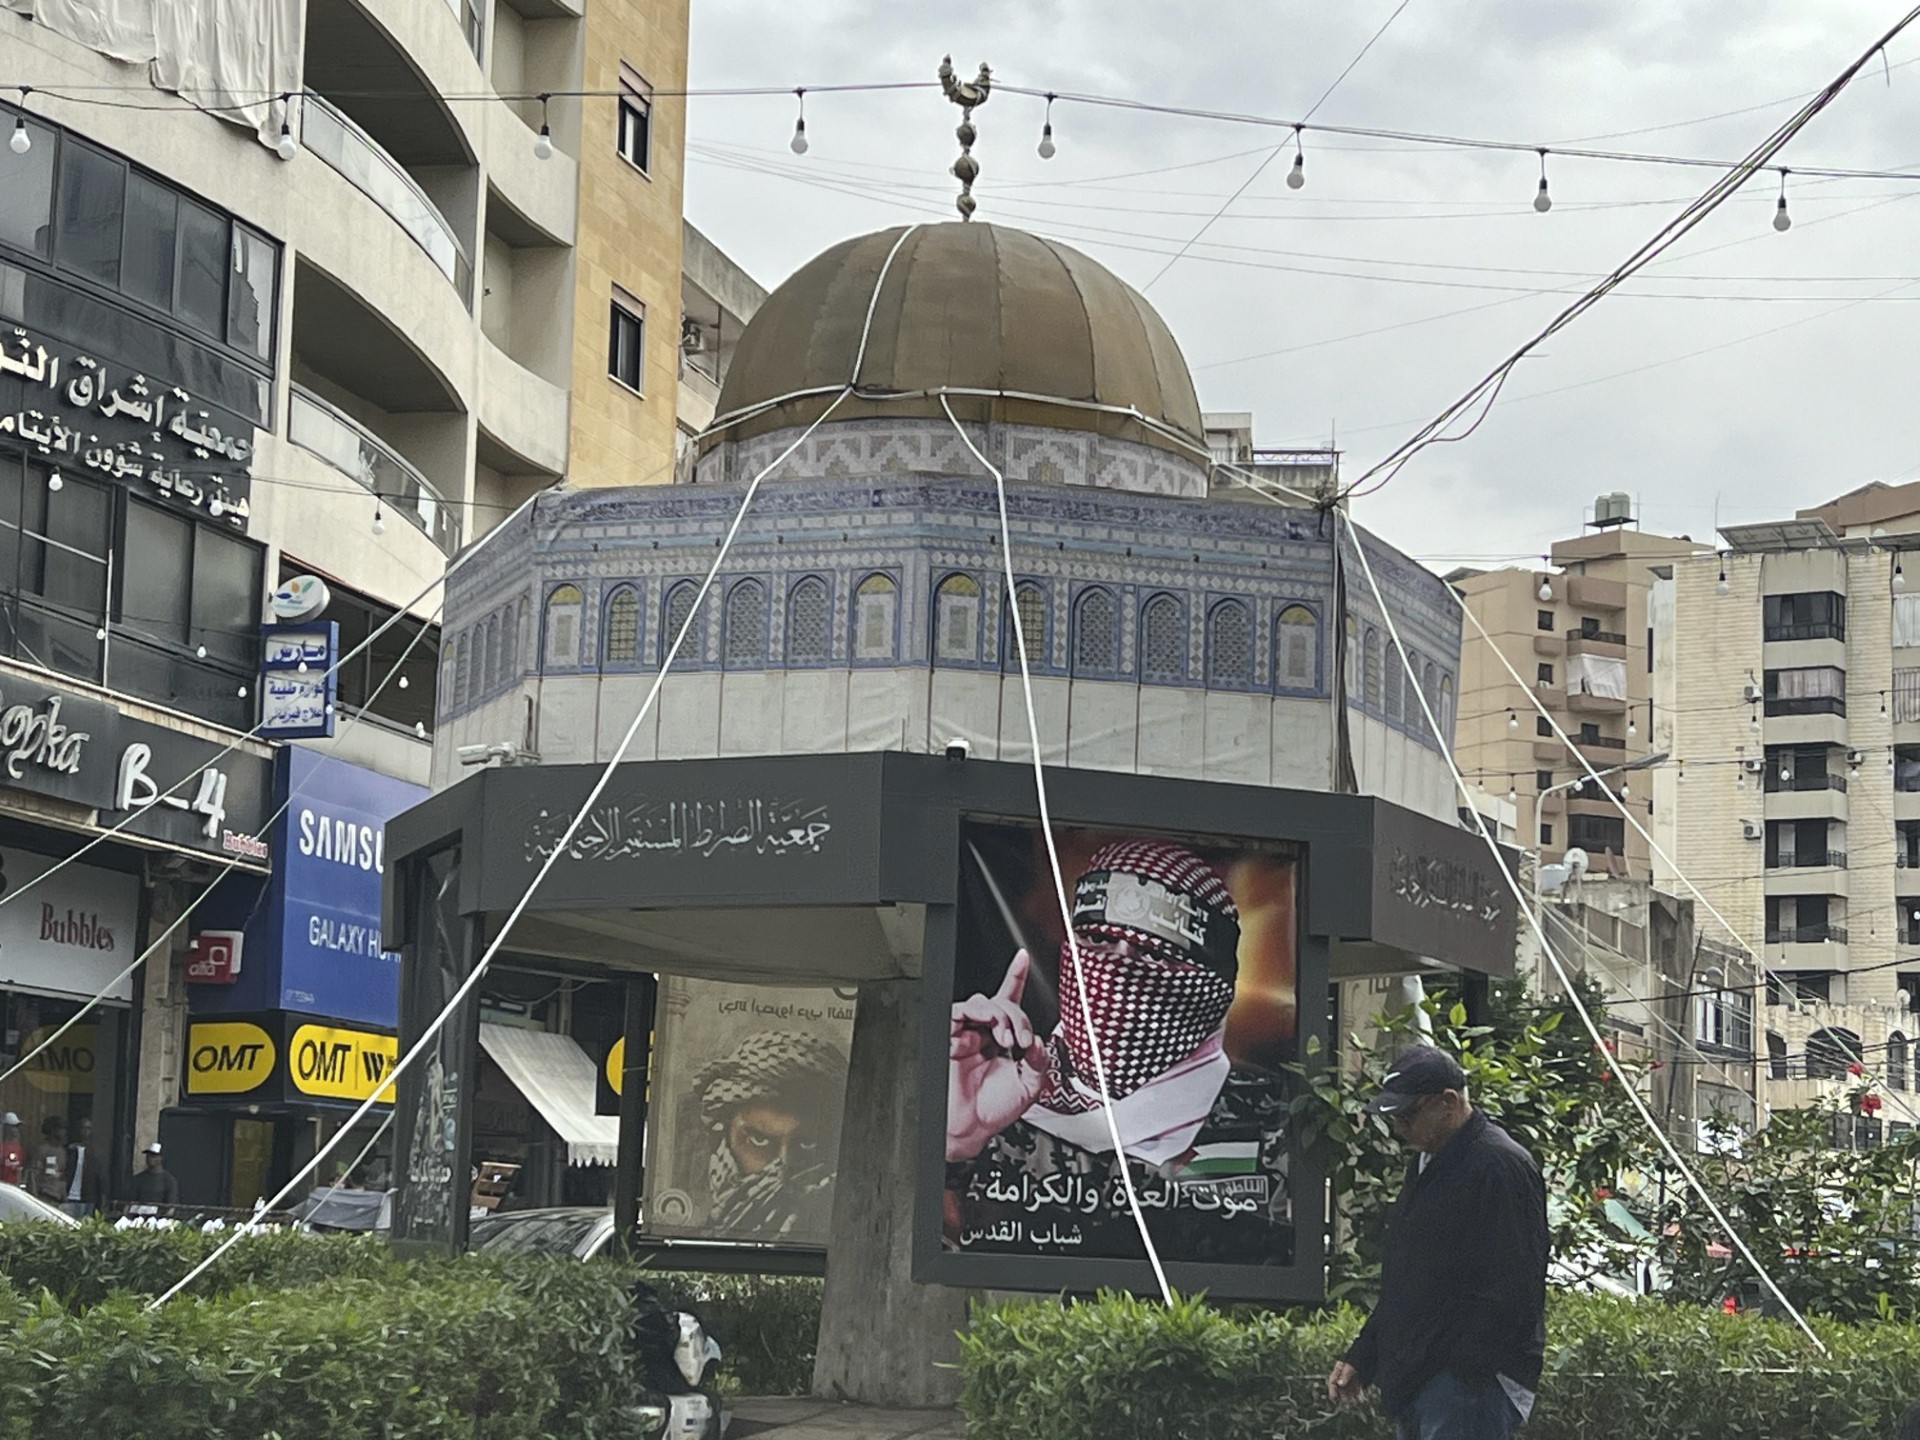 El rostro de Abu Obeida en una plaza de Sidon, Lbano.